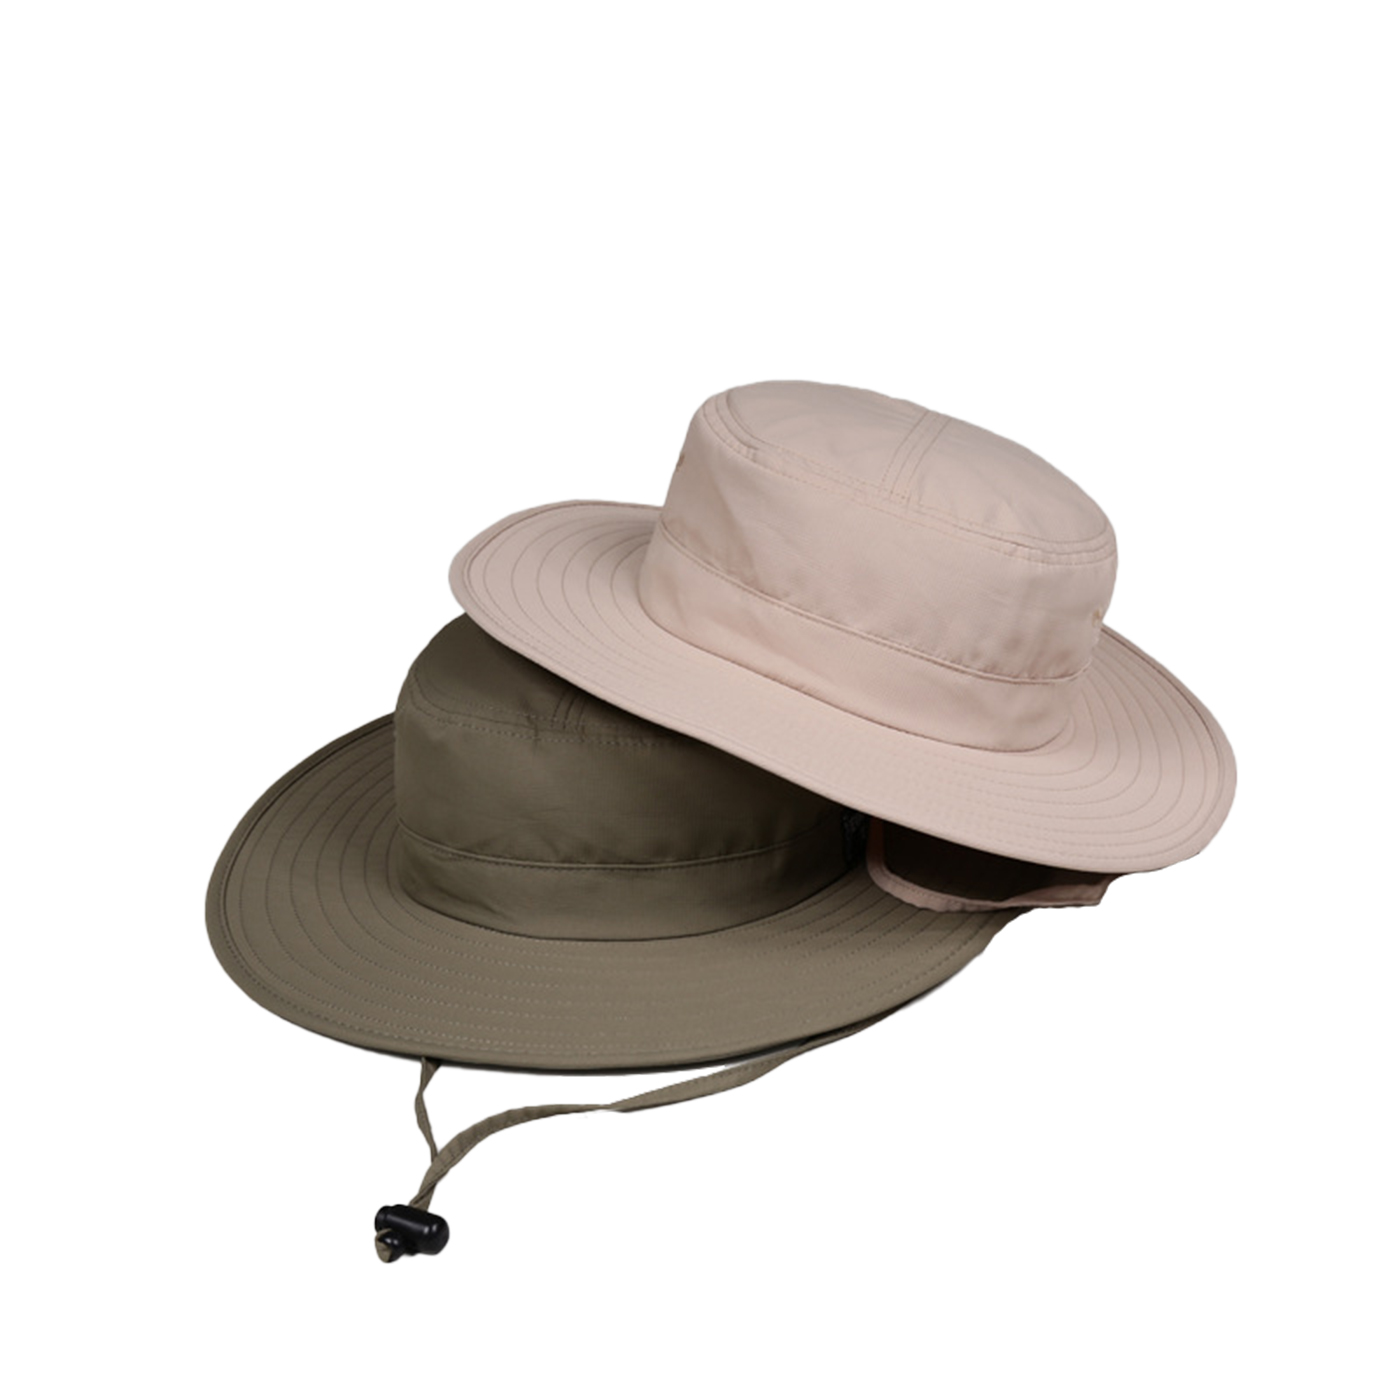 Outdoor Wide Brim Boonie Hat With String2